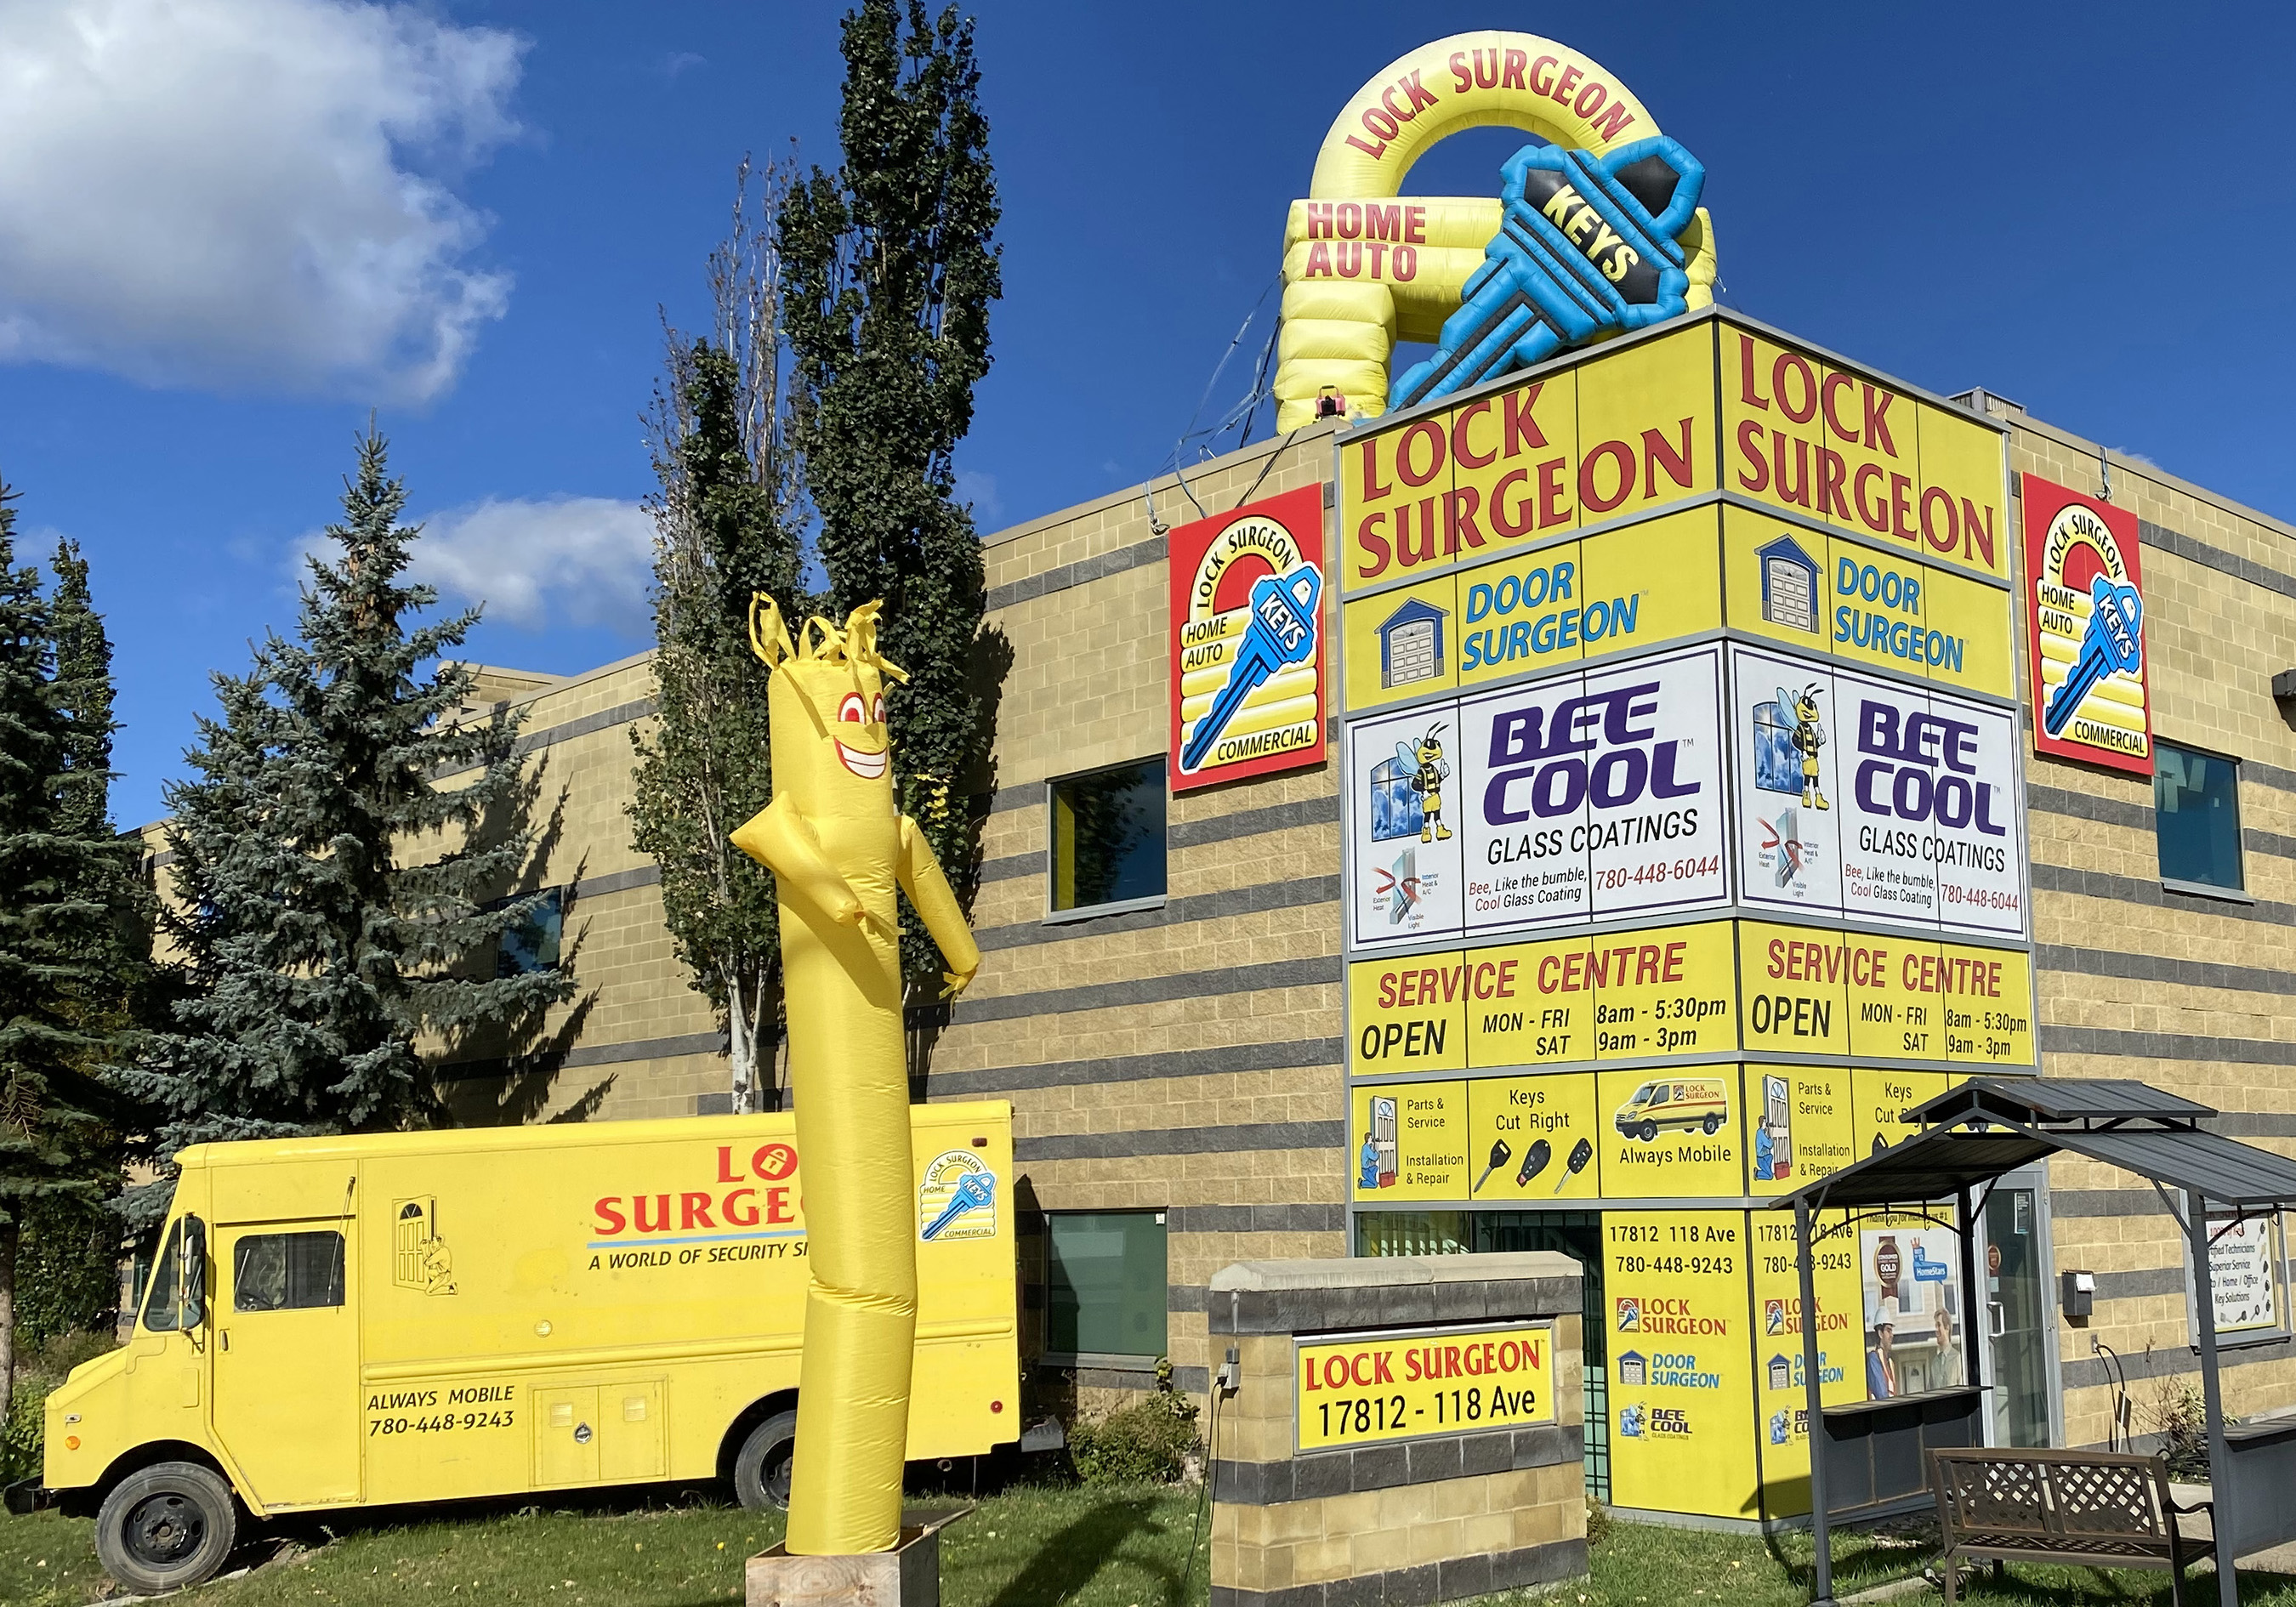 Main Door Surgeon Edmonton location photo.